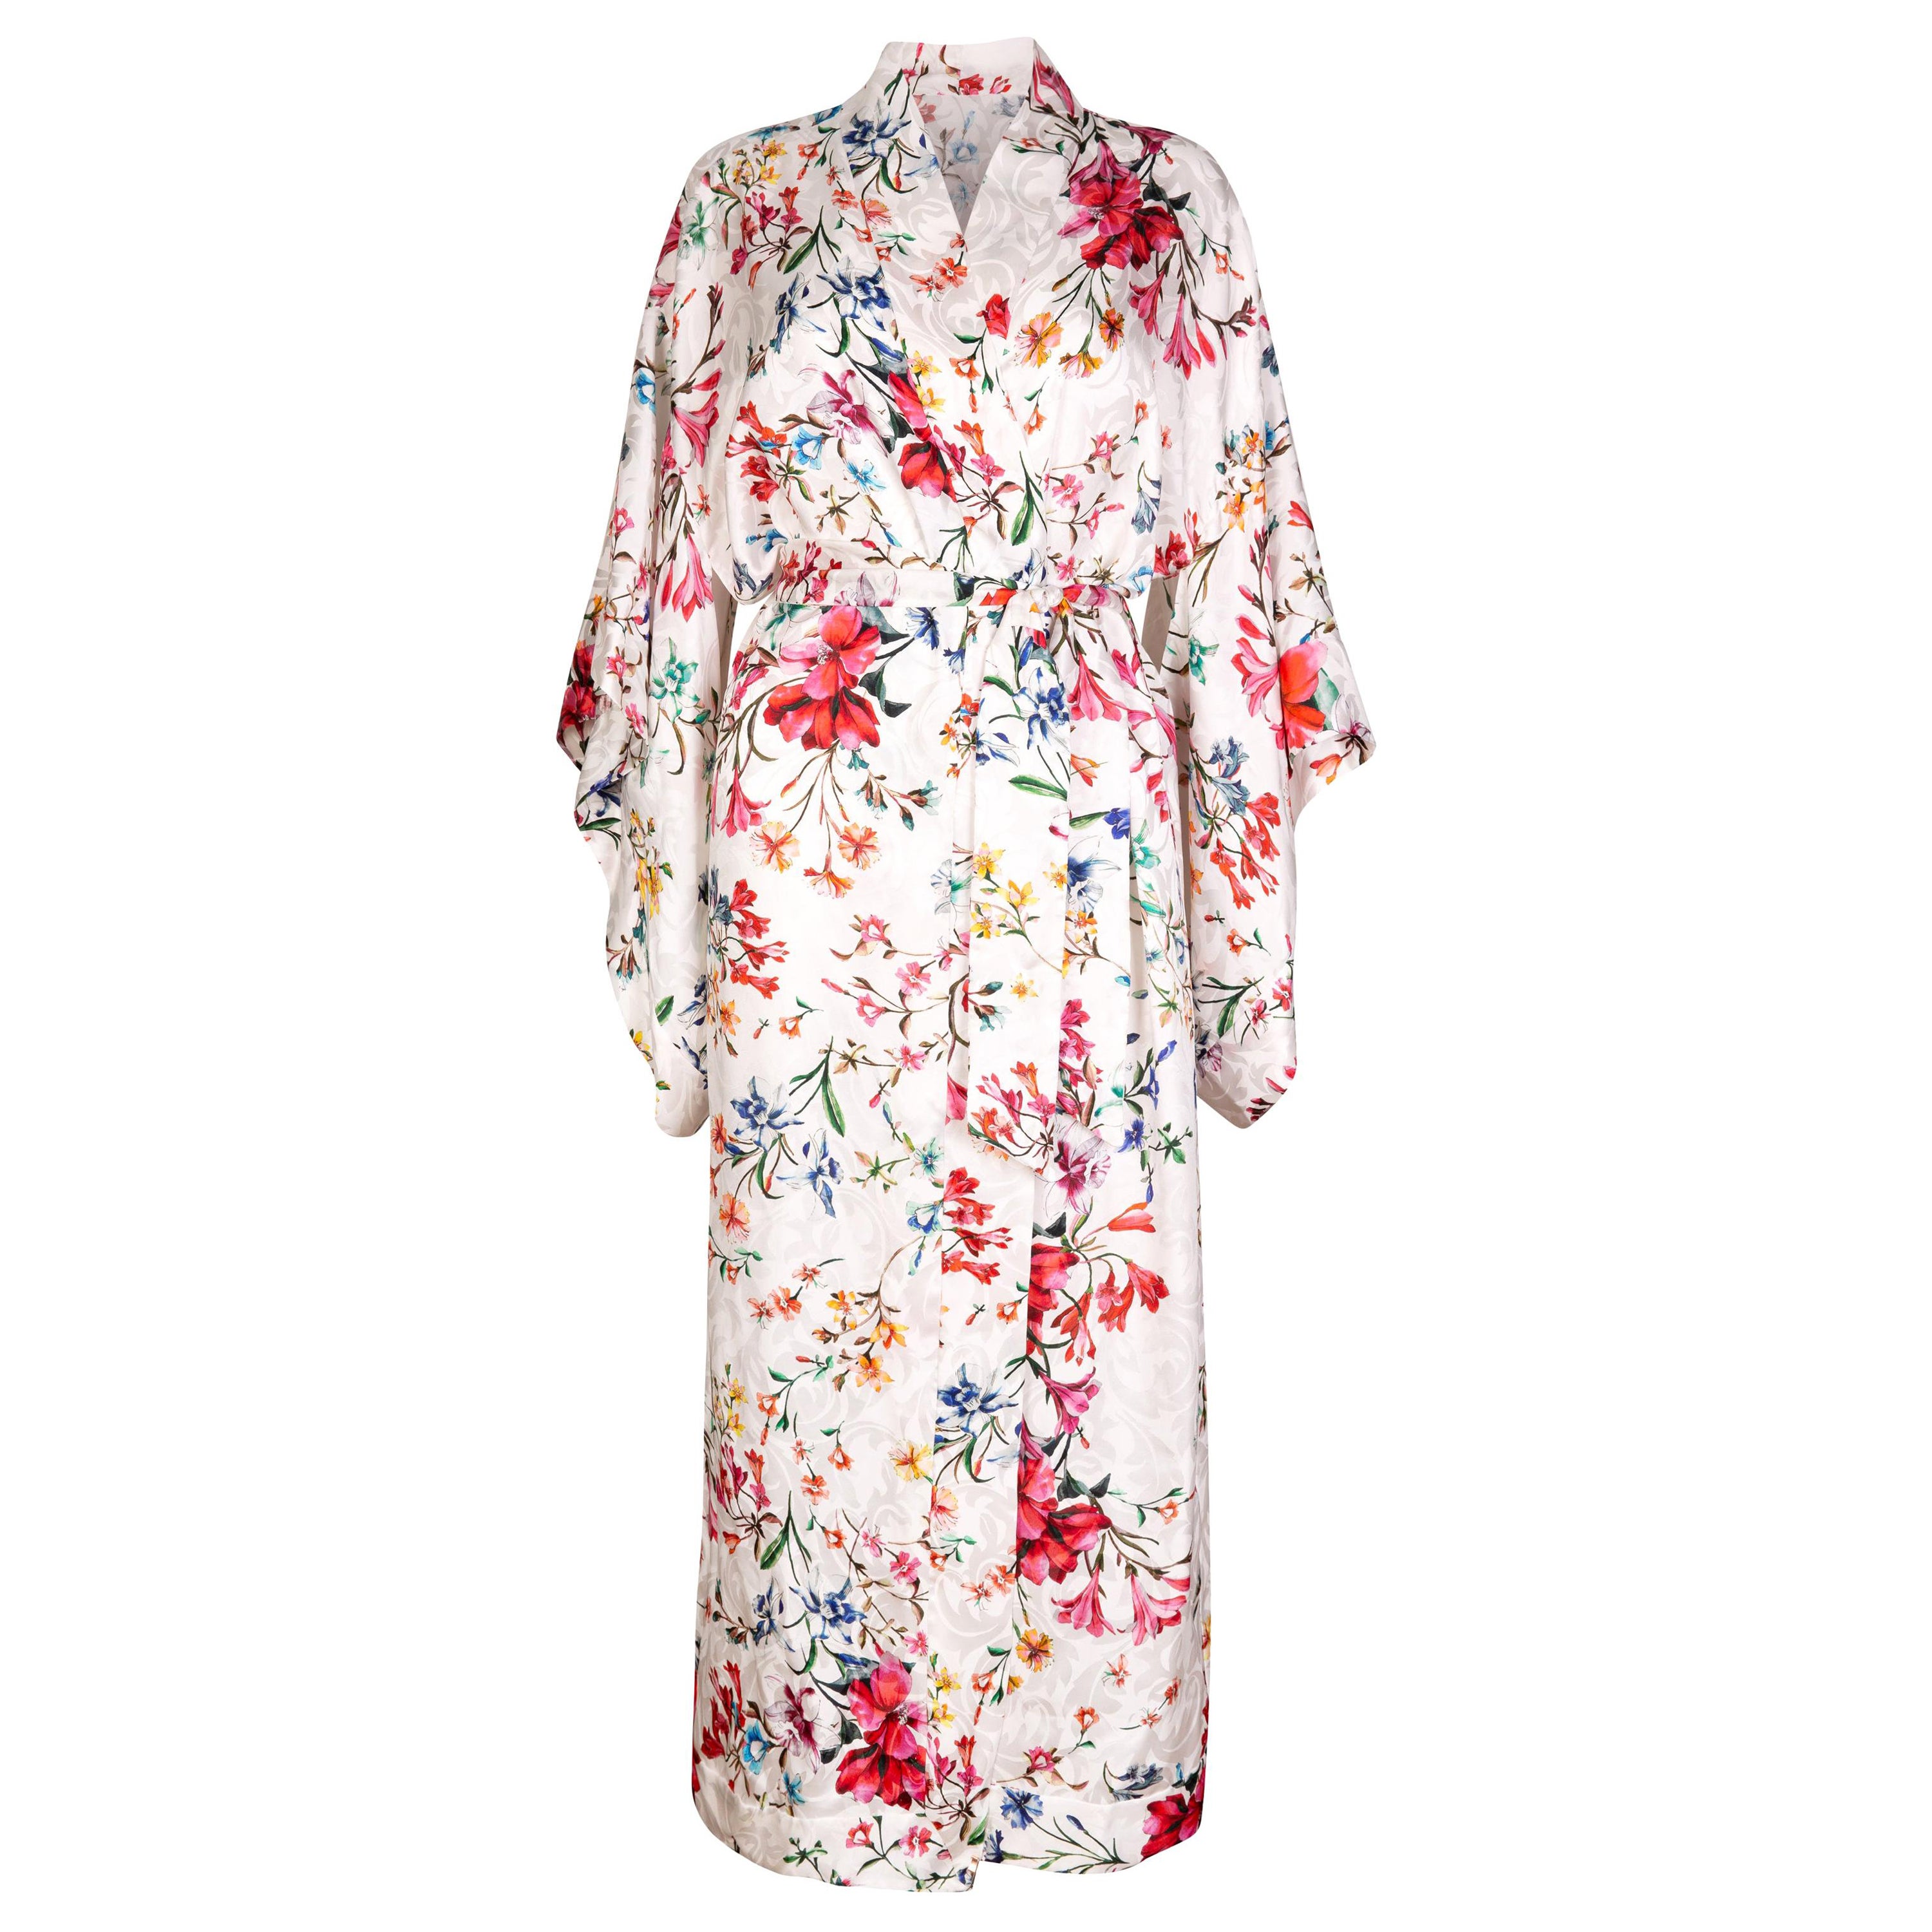 Londoner Kimonokleid aus italienischem Seiden-Satin mit Blumenmuster von Verheyen - Einheitsgröße 